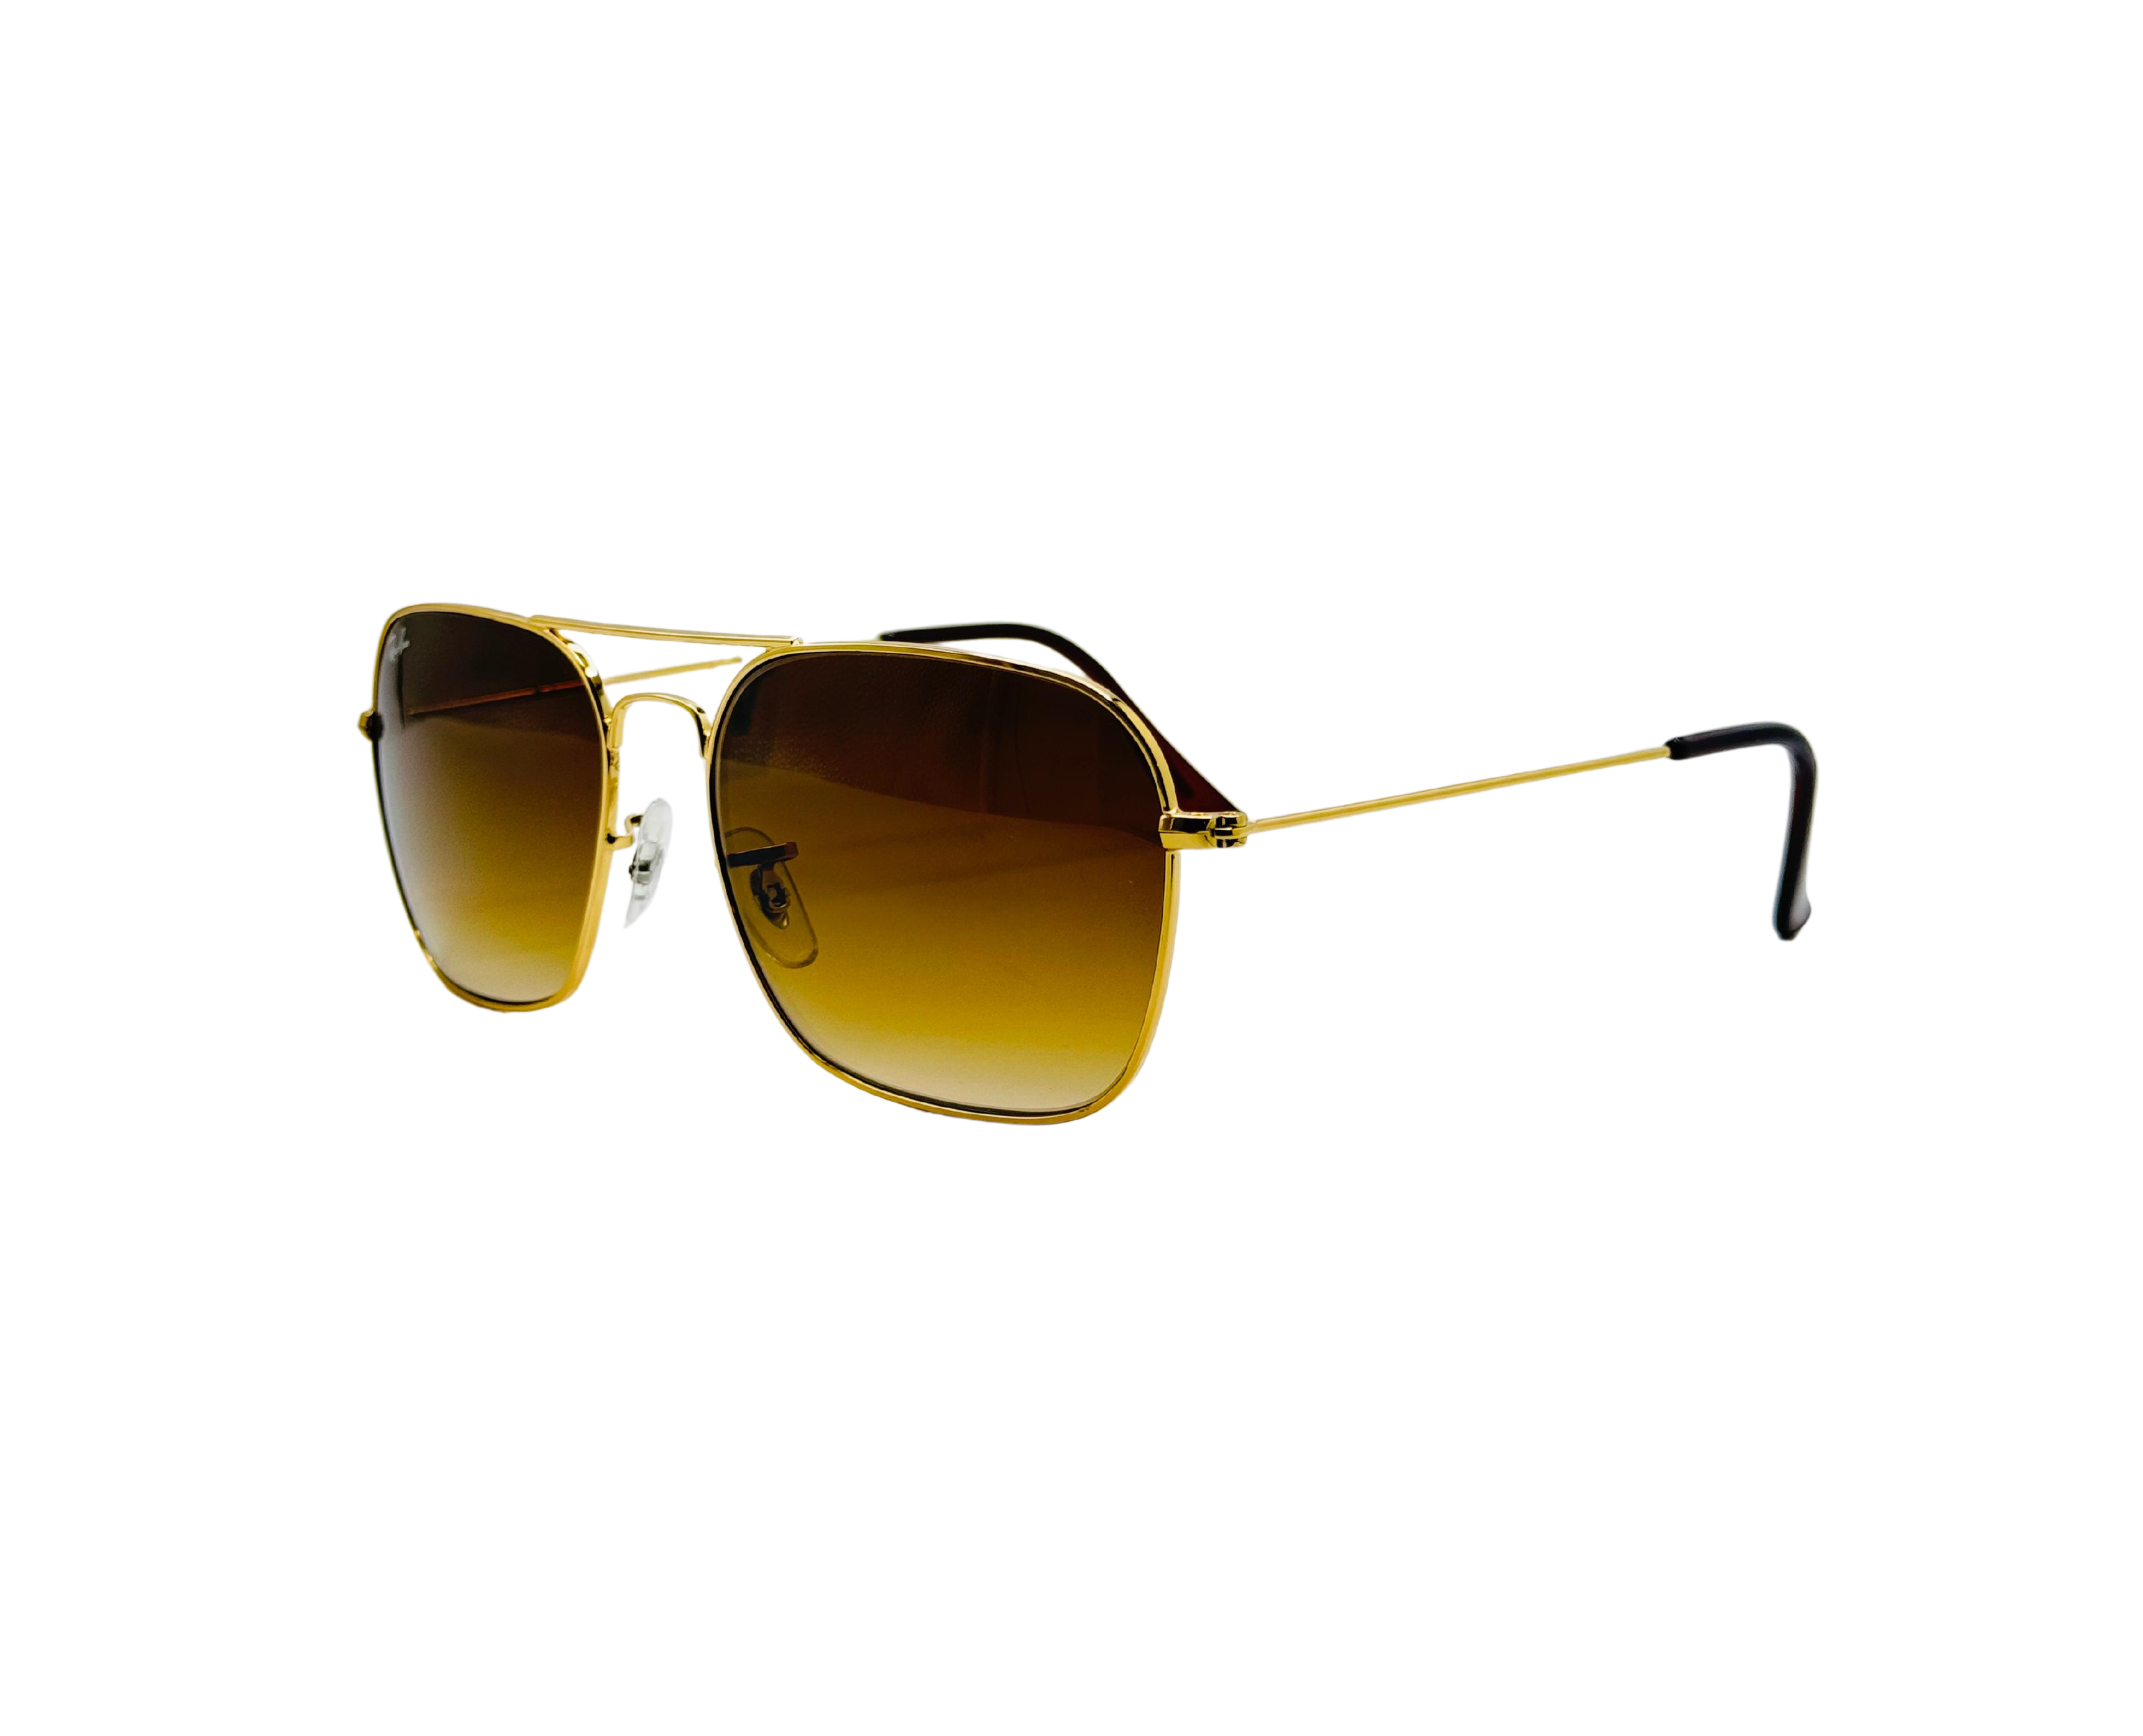 NS Luxury - 3136 - Caravan - Sunglasses